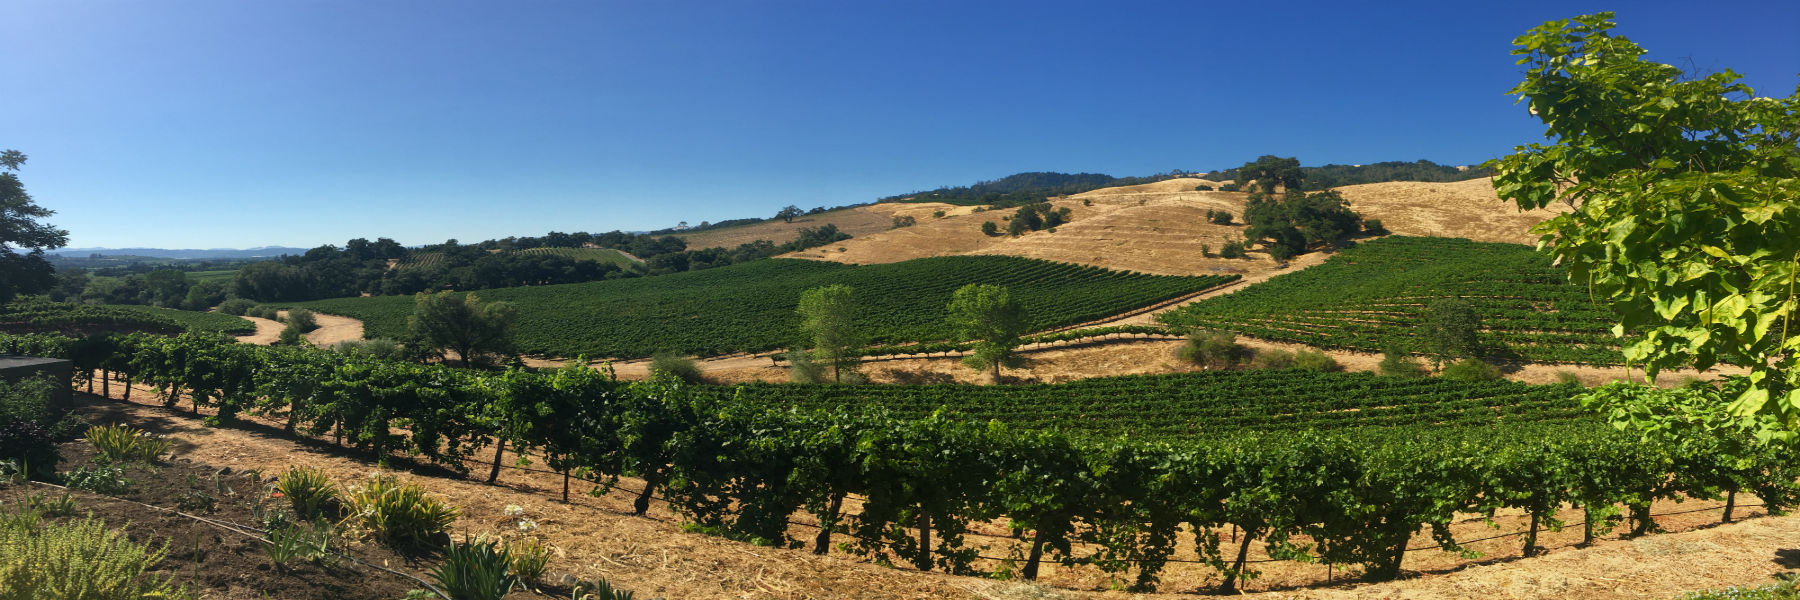 Vineyard on hill slope